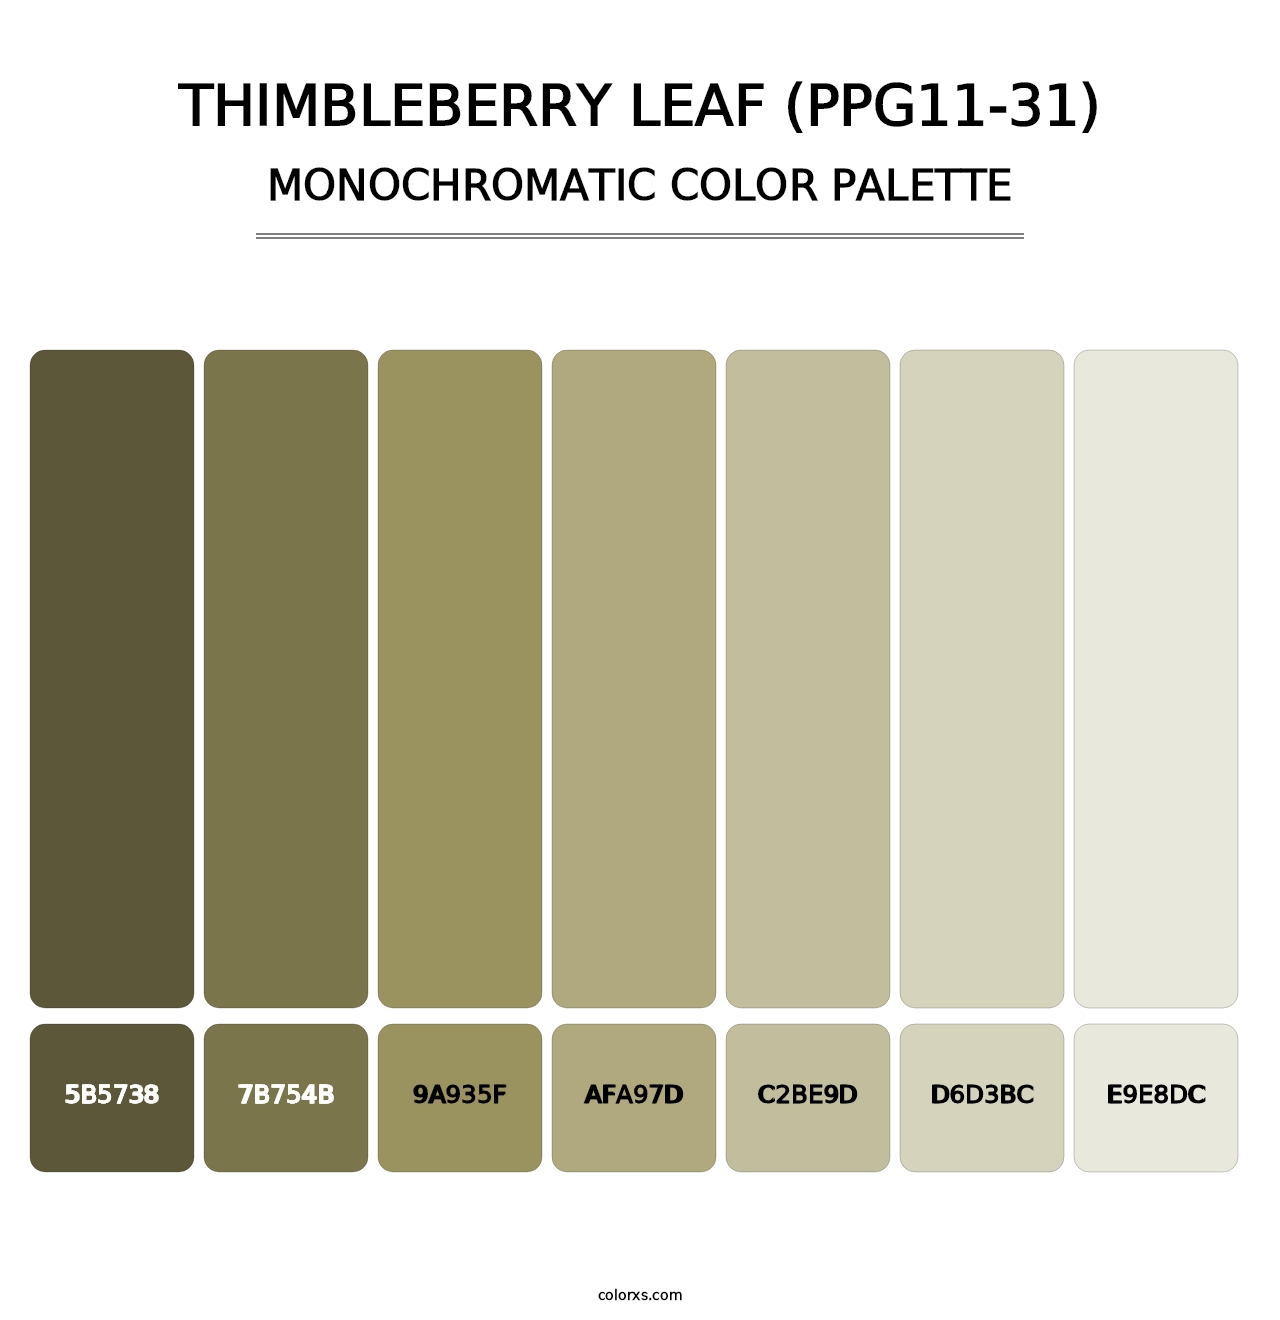 Thimbleberry Leaf (PPG11-31) - Monochromatic Color Palette